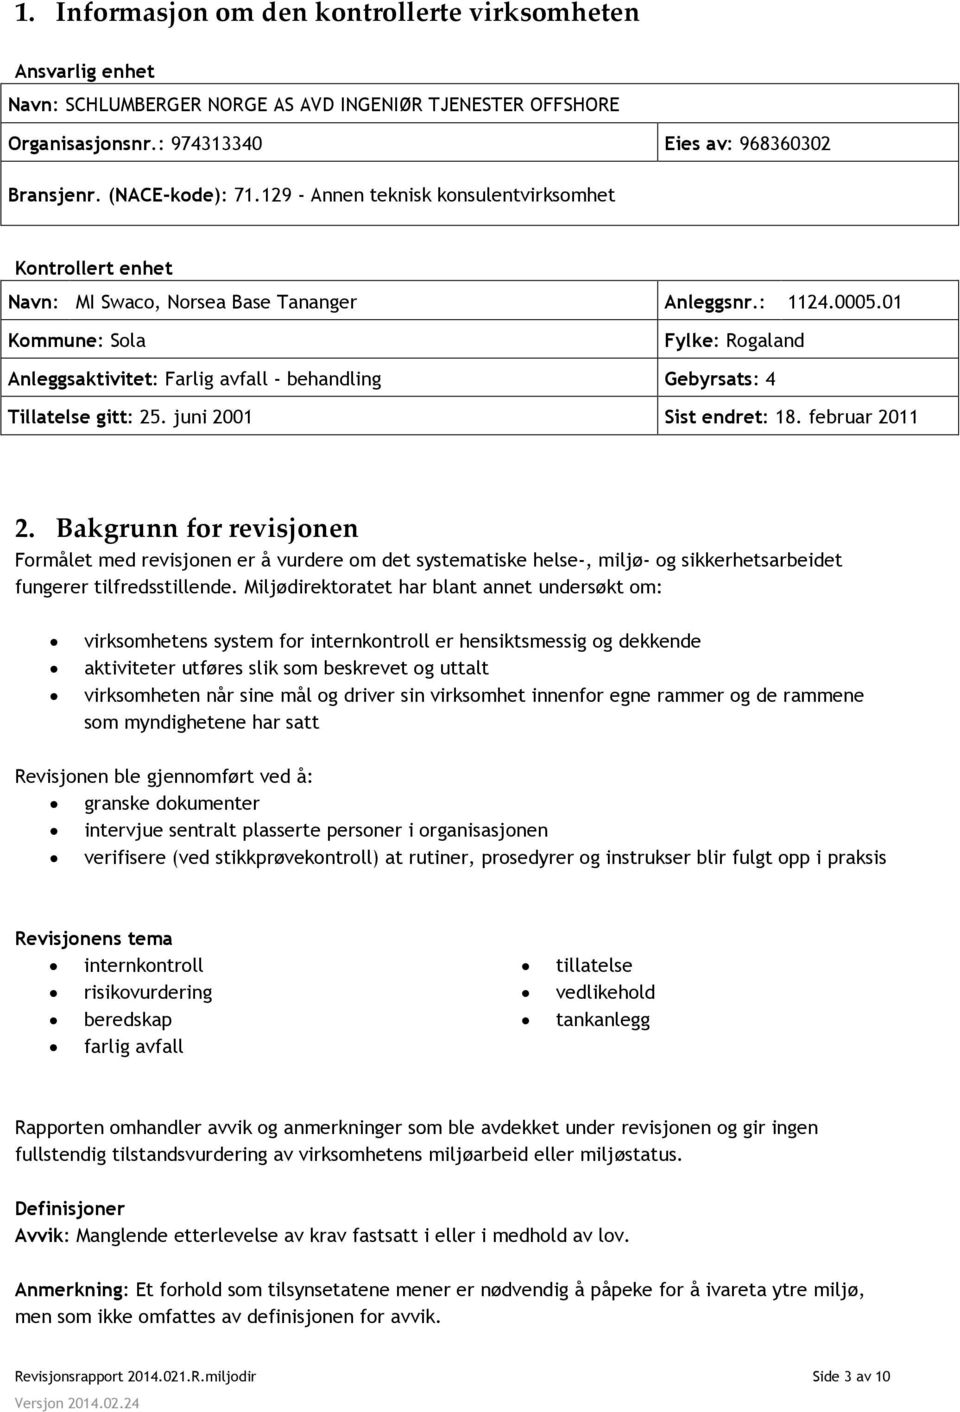 01 Kommune: Sola Fylke: Rogaland Anleggsaktivitet: Farlig avfall - behandling Gebyrsats: 4 Tillatelse gitt: 25. juni 2001 Sist endret: 18. februar 2011 2.